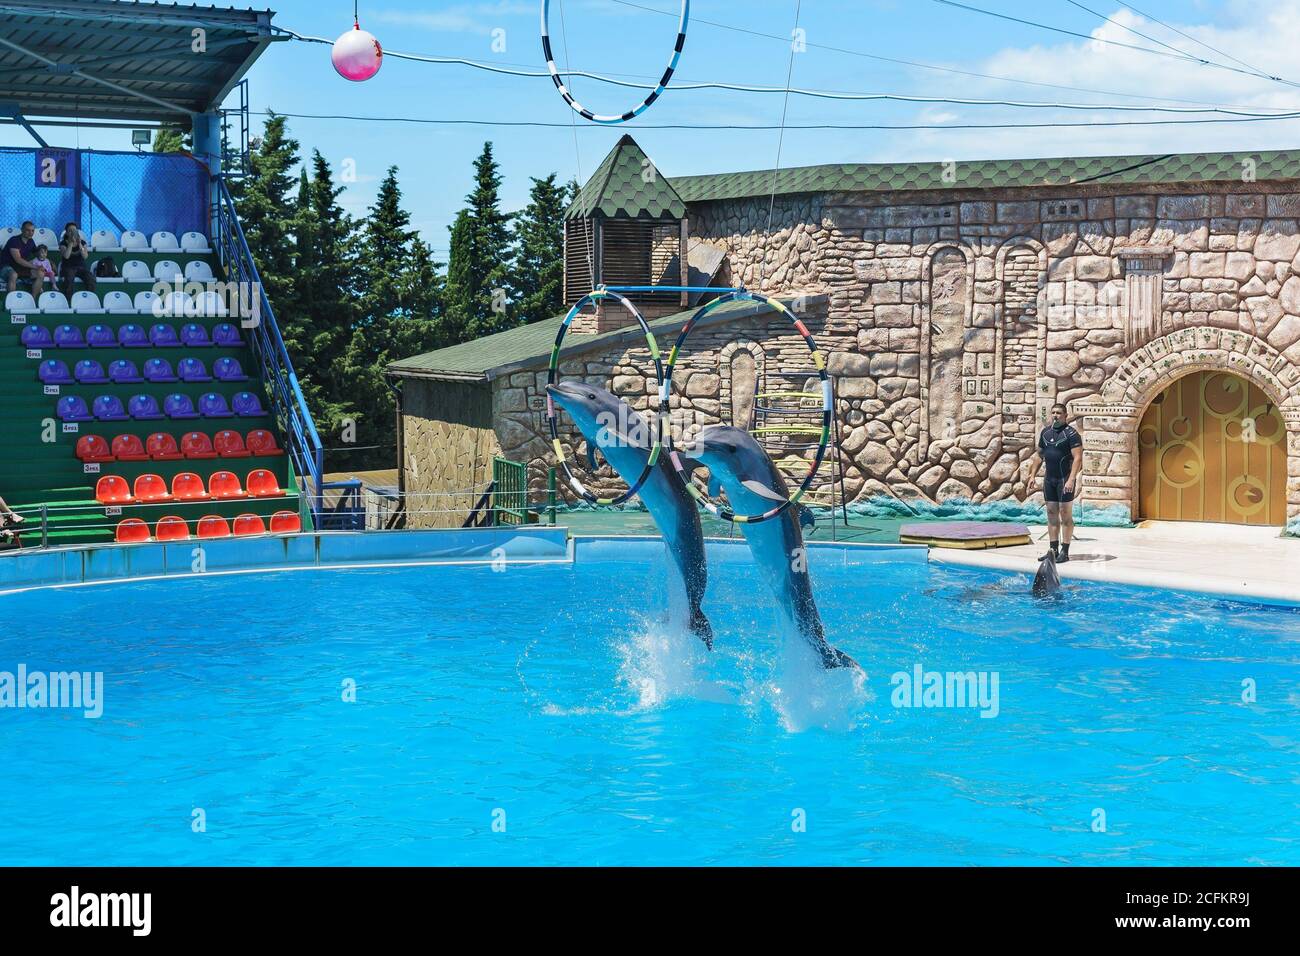 Adler, Sotchi, Krasnodar Krai, Russie - juin 11.2017 : les grands dauphins sont de grands dauphins, ou grands dauphins (lat. Tursiops truncatus) Banque D'Images